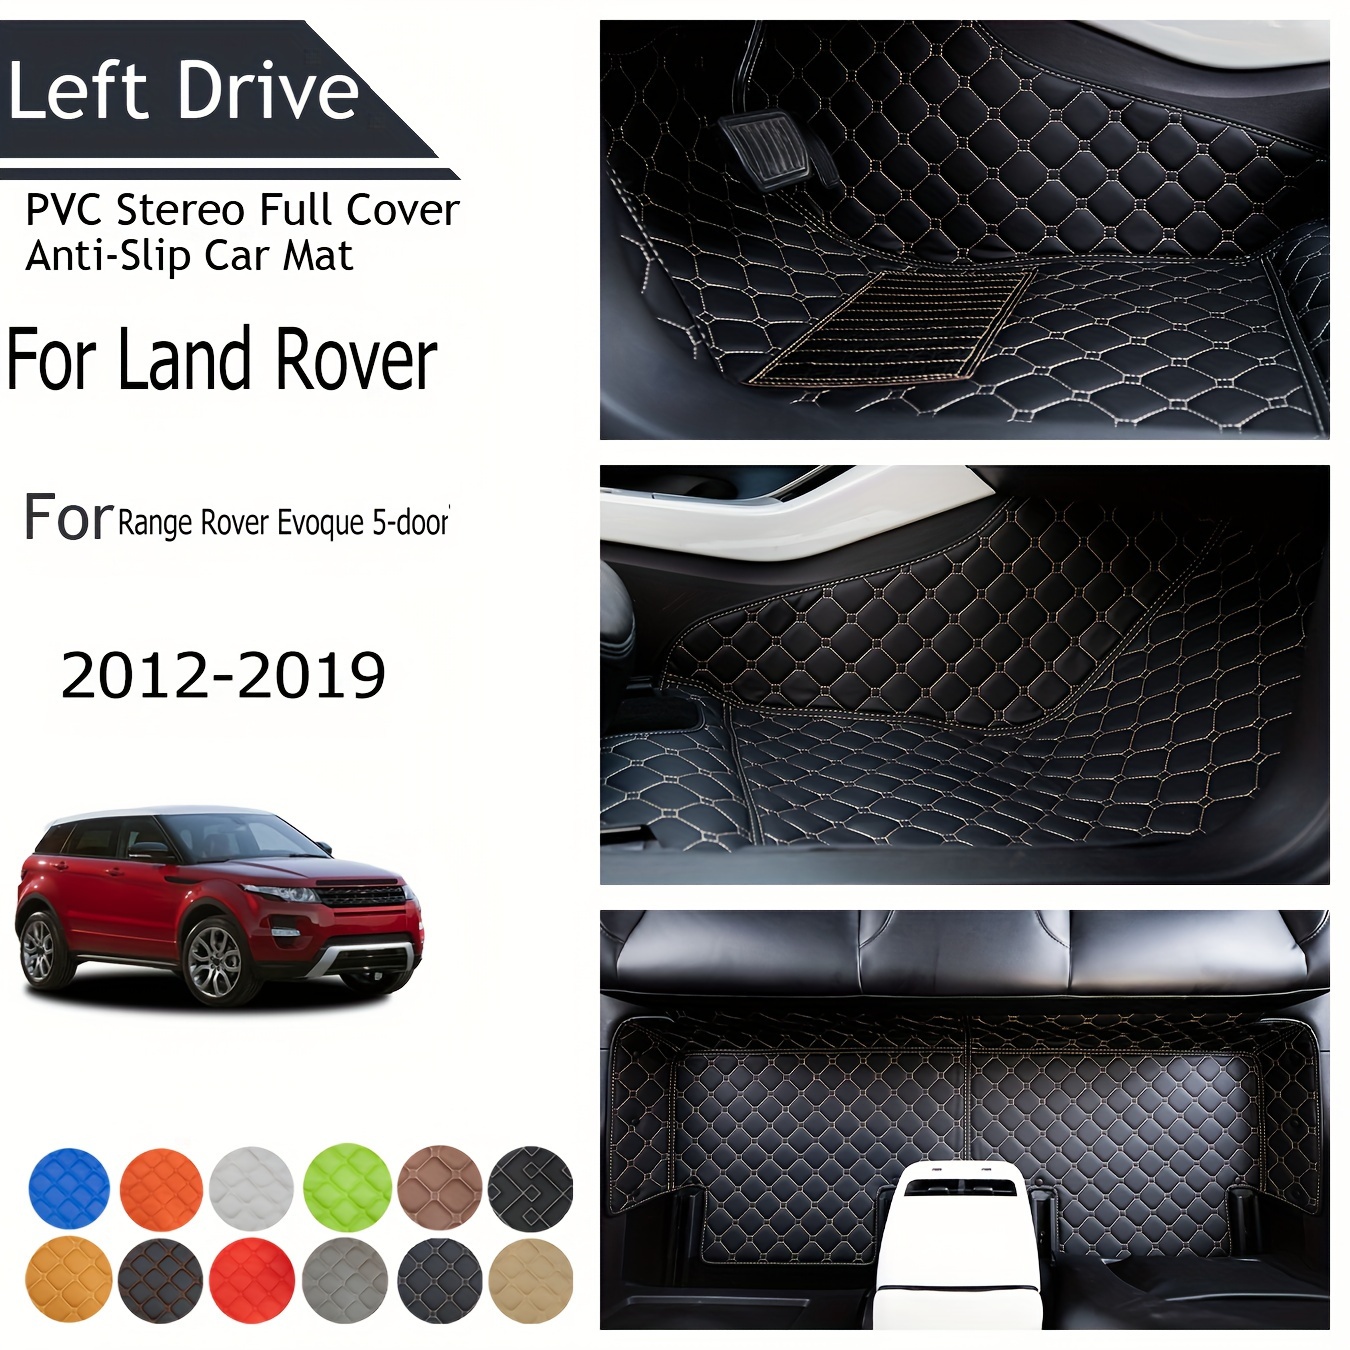 2 Stücke Für Land Rover Led Willkommen Lampen Range Rover